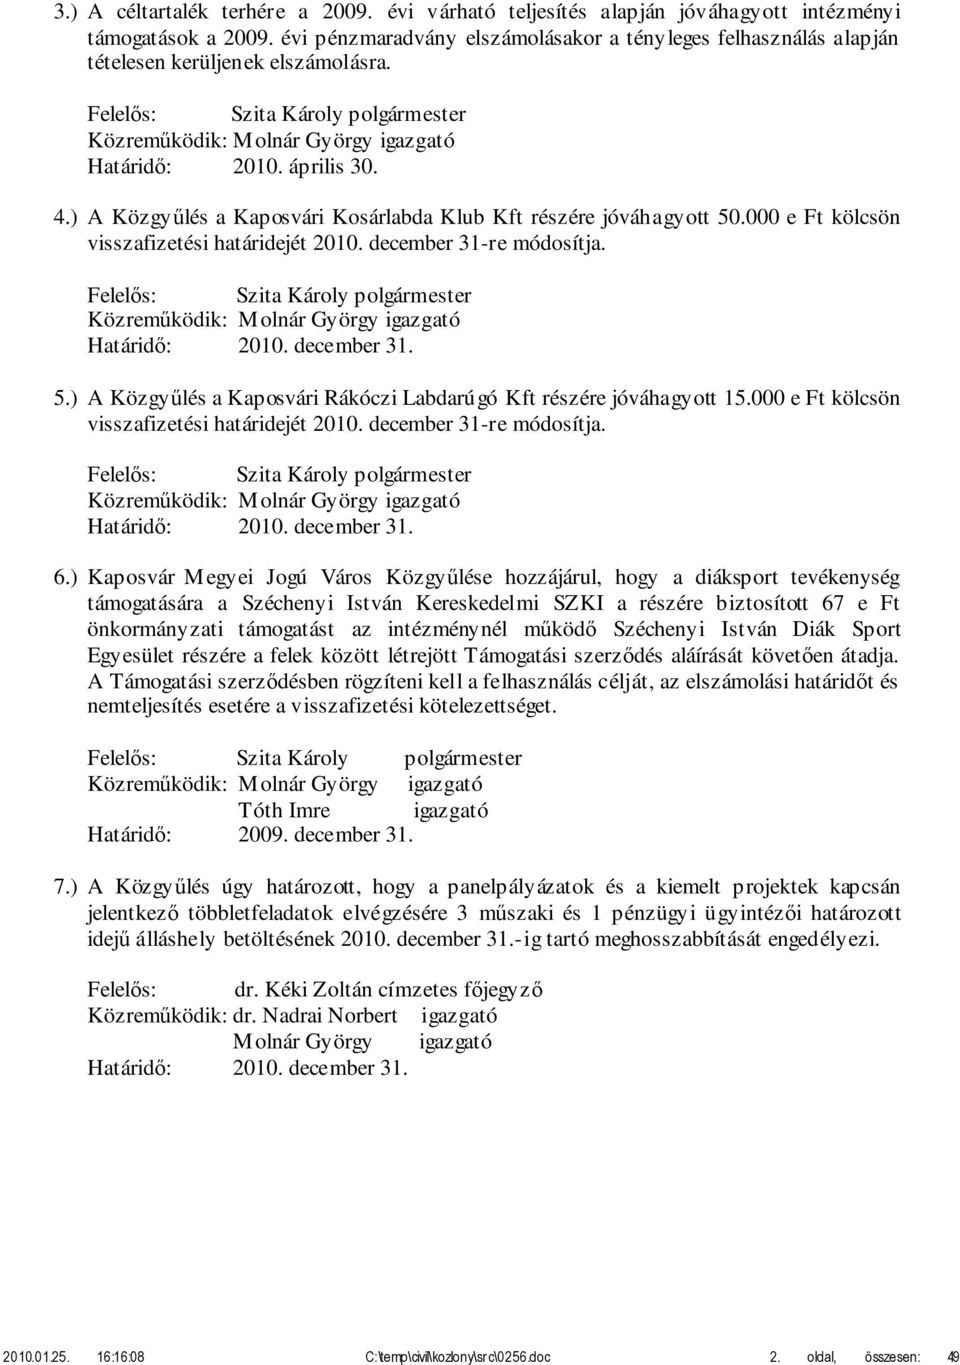 ) A Közgyűlés a Kaposvári Kosárlabda Klub Kft részére jóváhagyott 50.000 e Ft kölcsön visszafizetési határidejét 2010. december 31-re módosítja. Közreműködik: Molnár György igazgató Határidő: 2010.